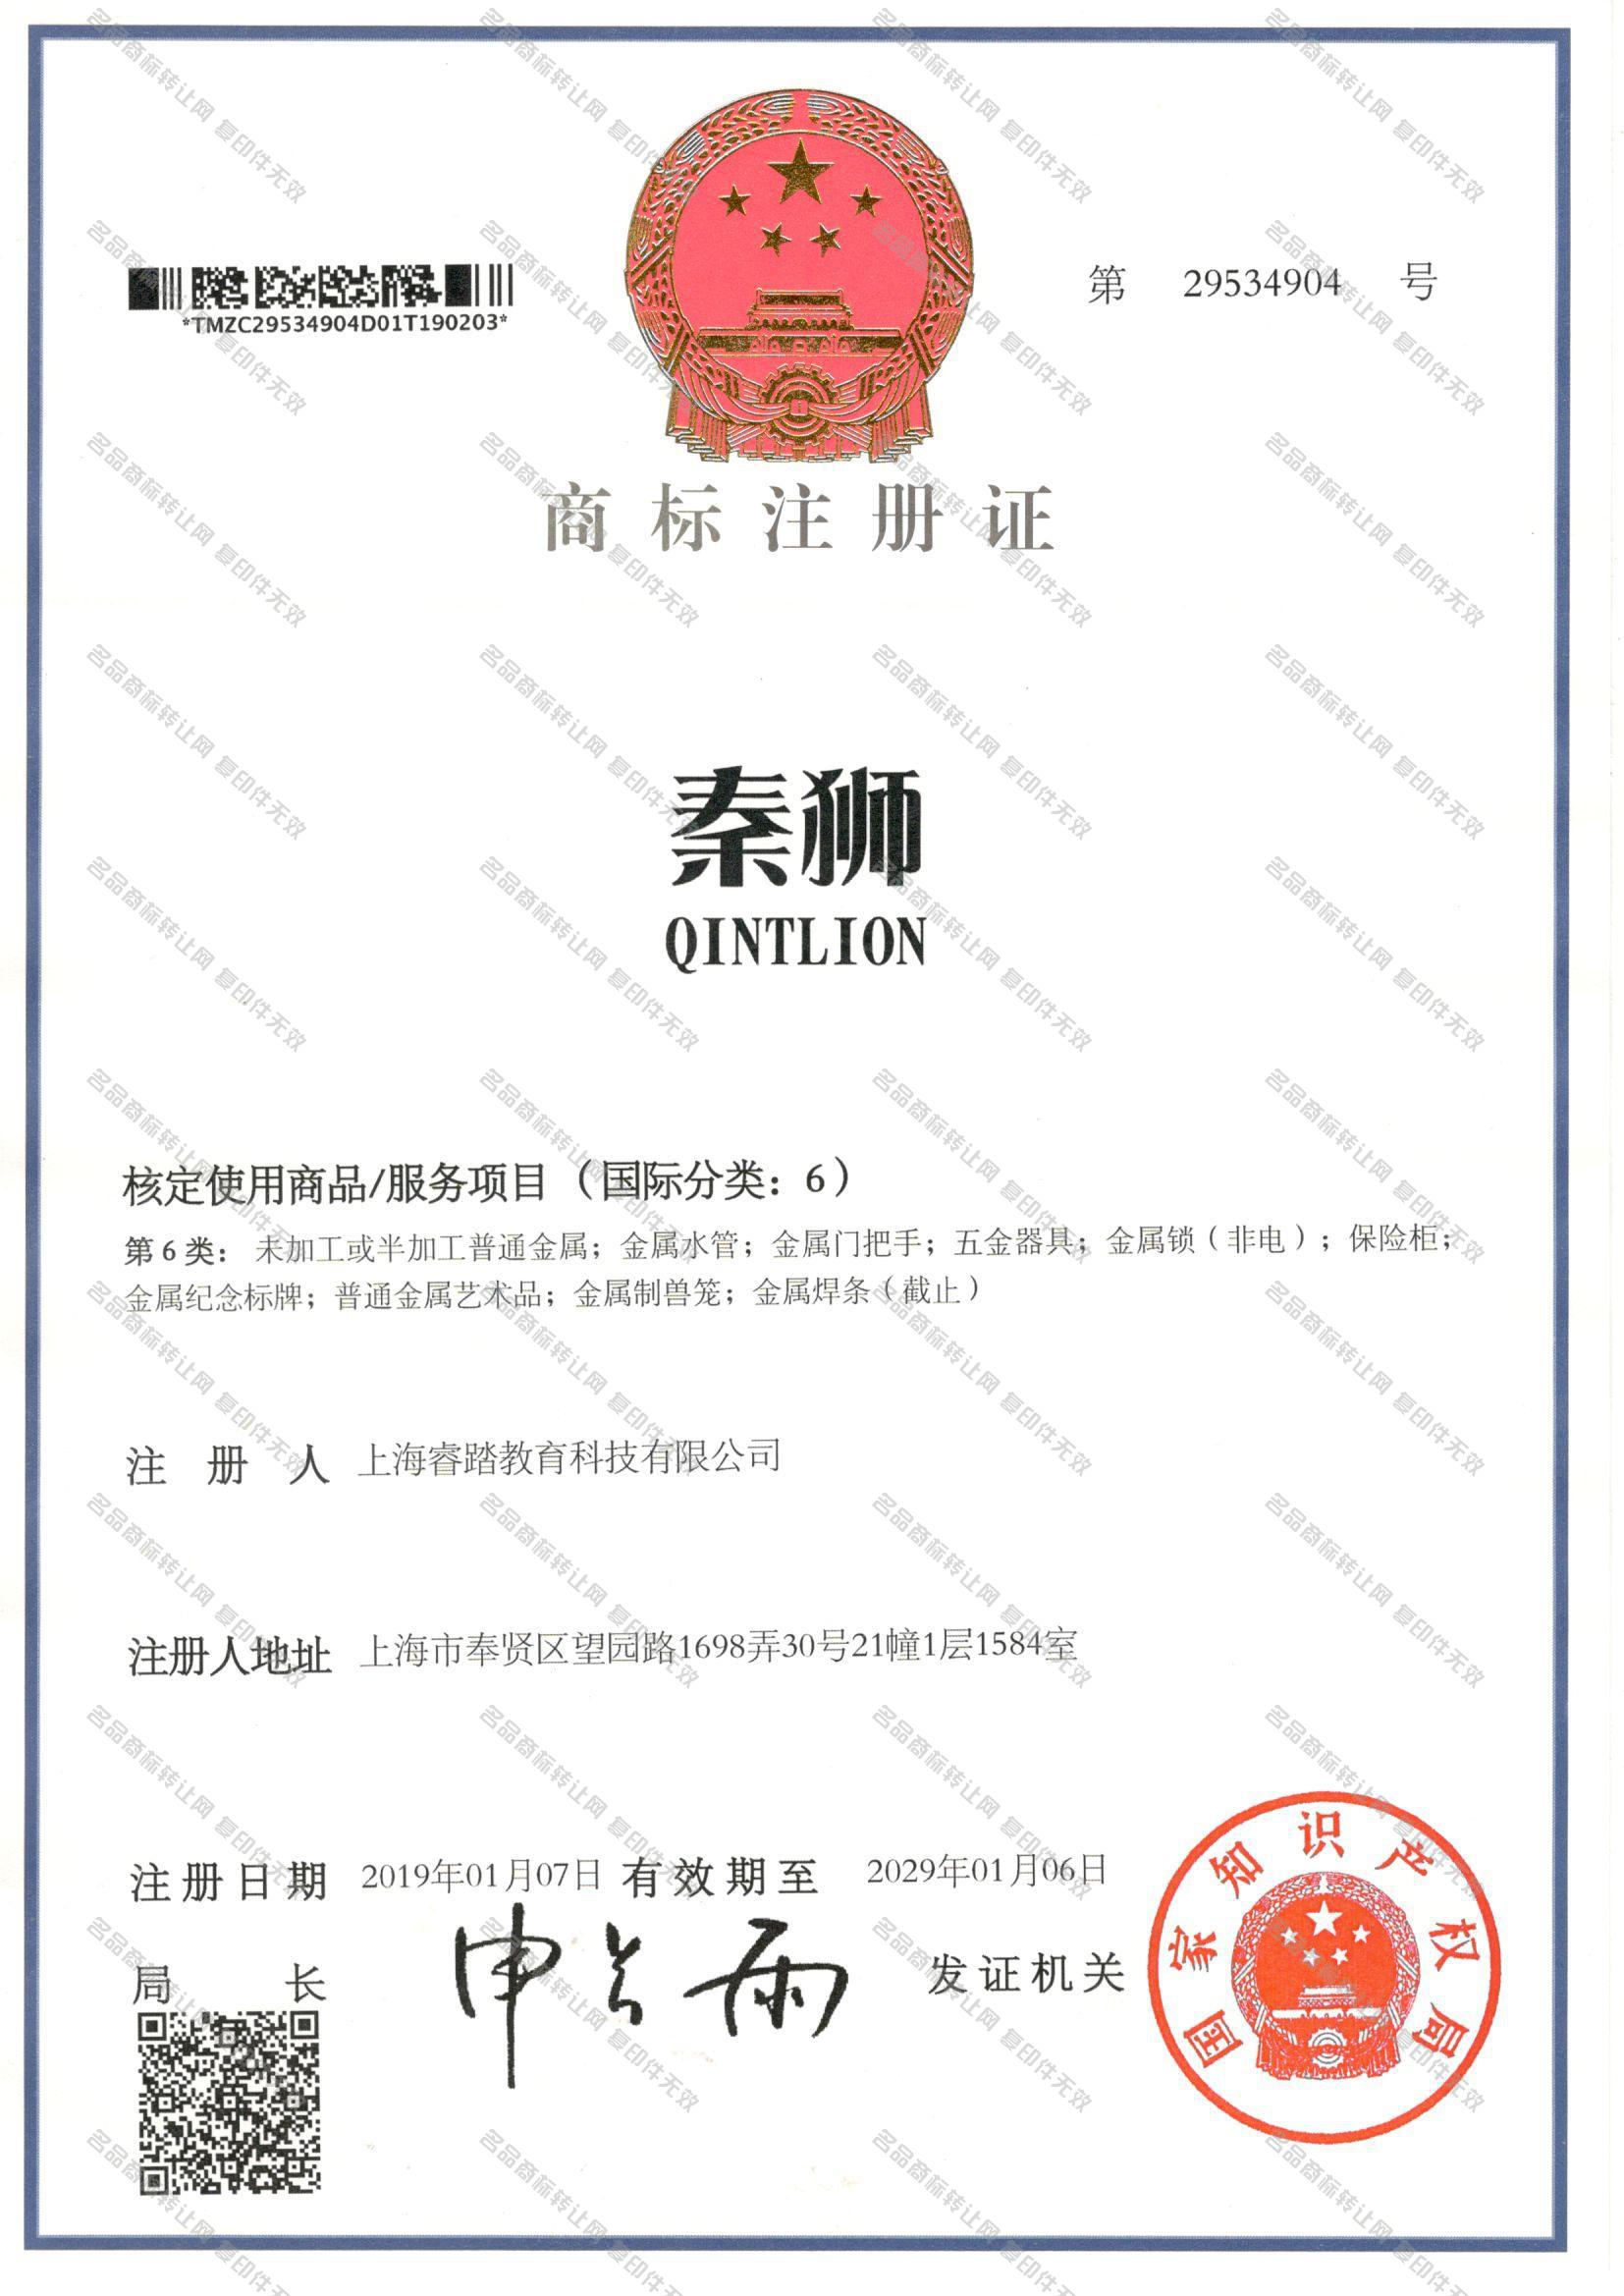 秦狮 QINTLION注册证